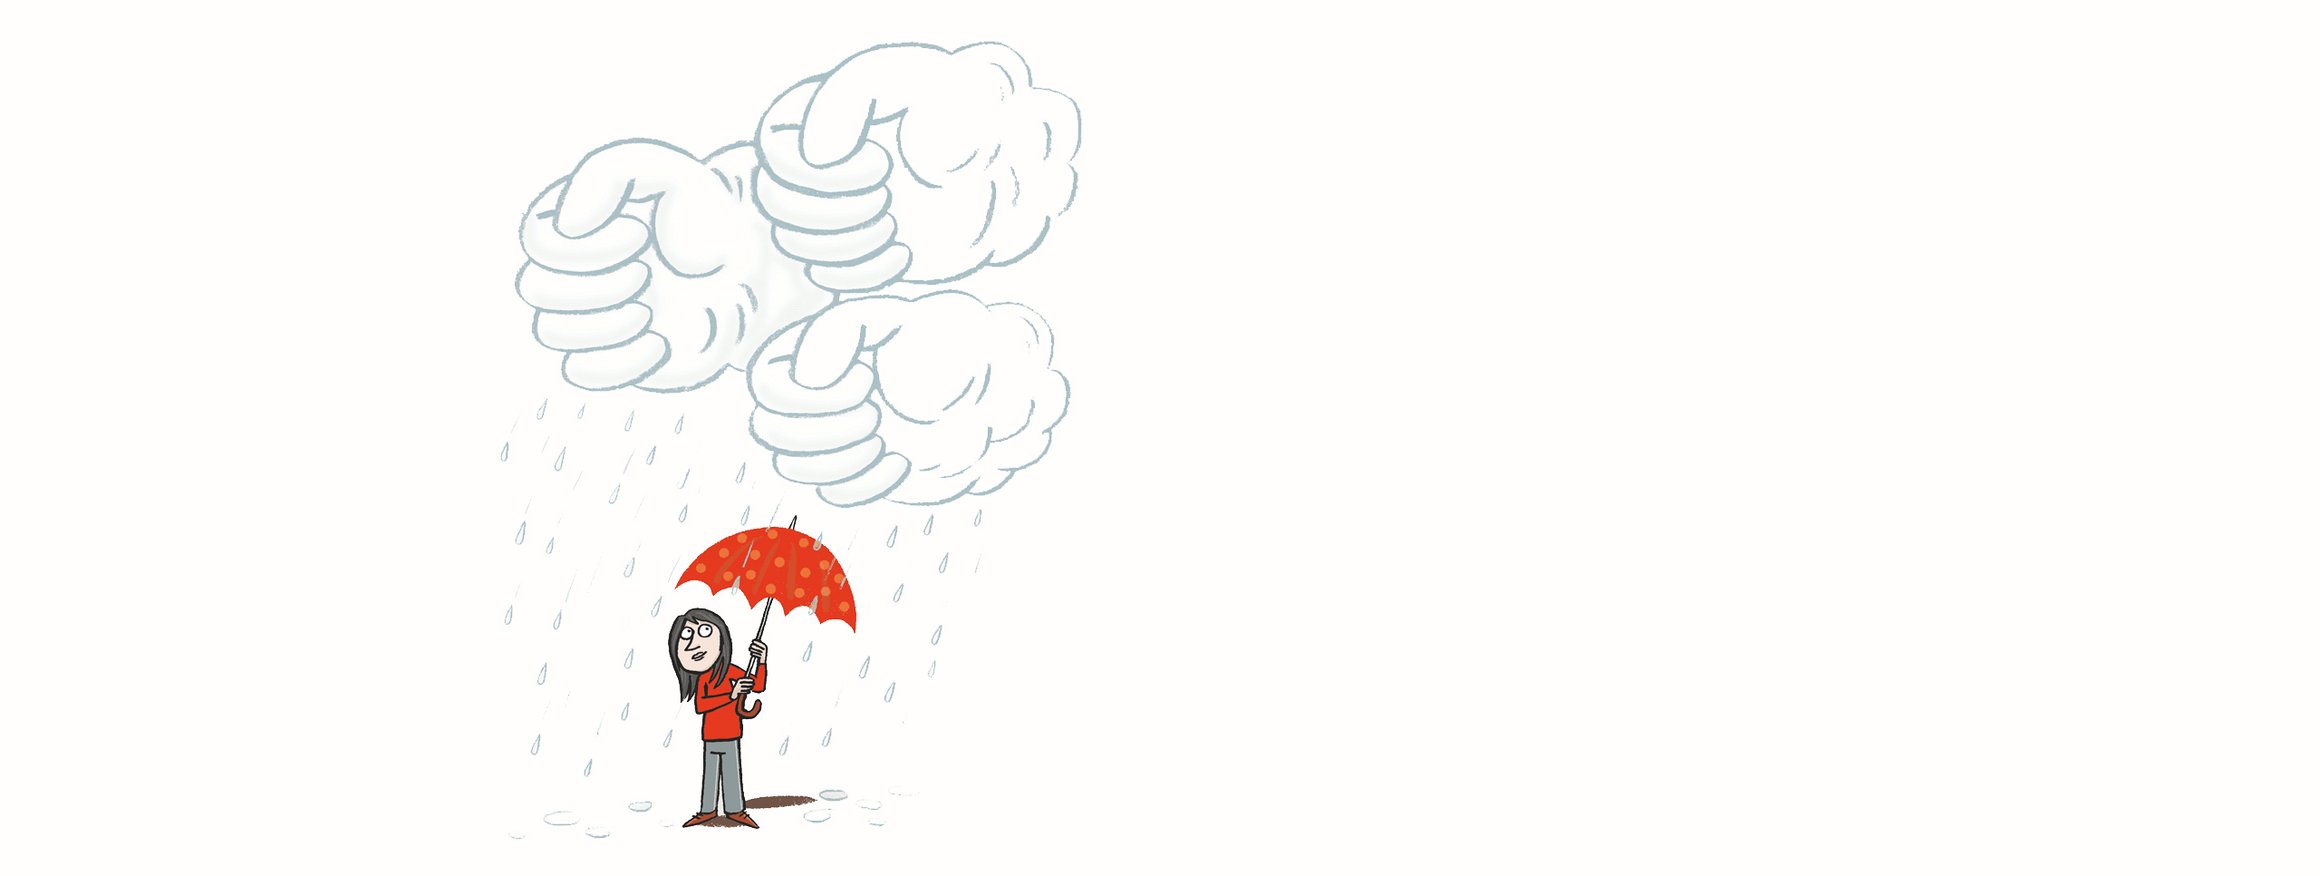 Die Illustration zeigt eine Frau, die einen roten Regenschirm über sich hält, während Wolken in Form von Händen Tropfen auf sie herauspressen